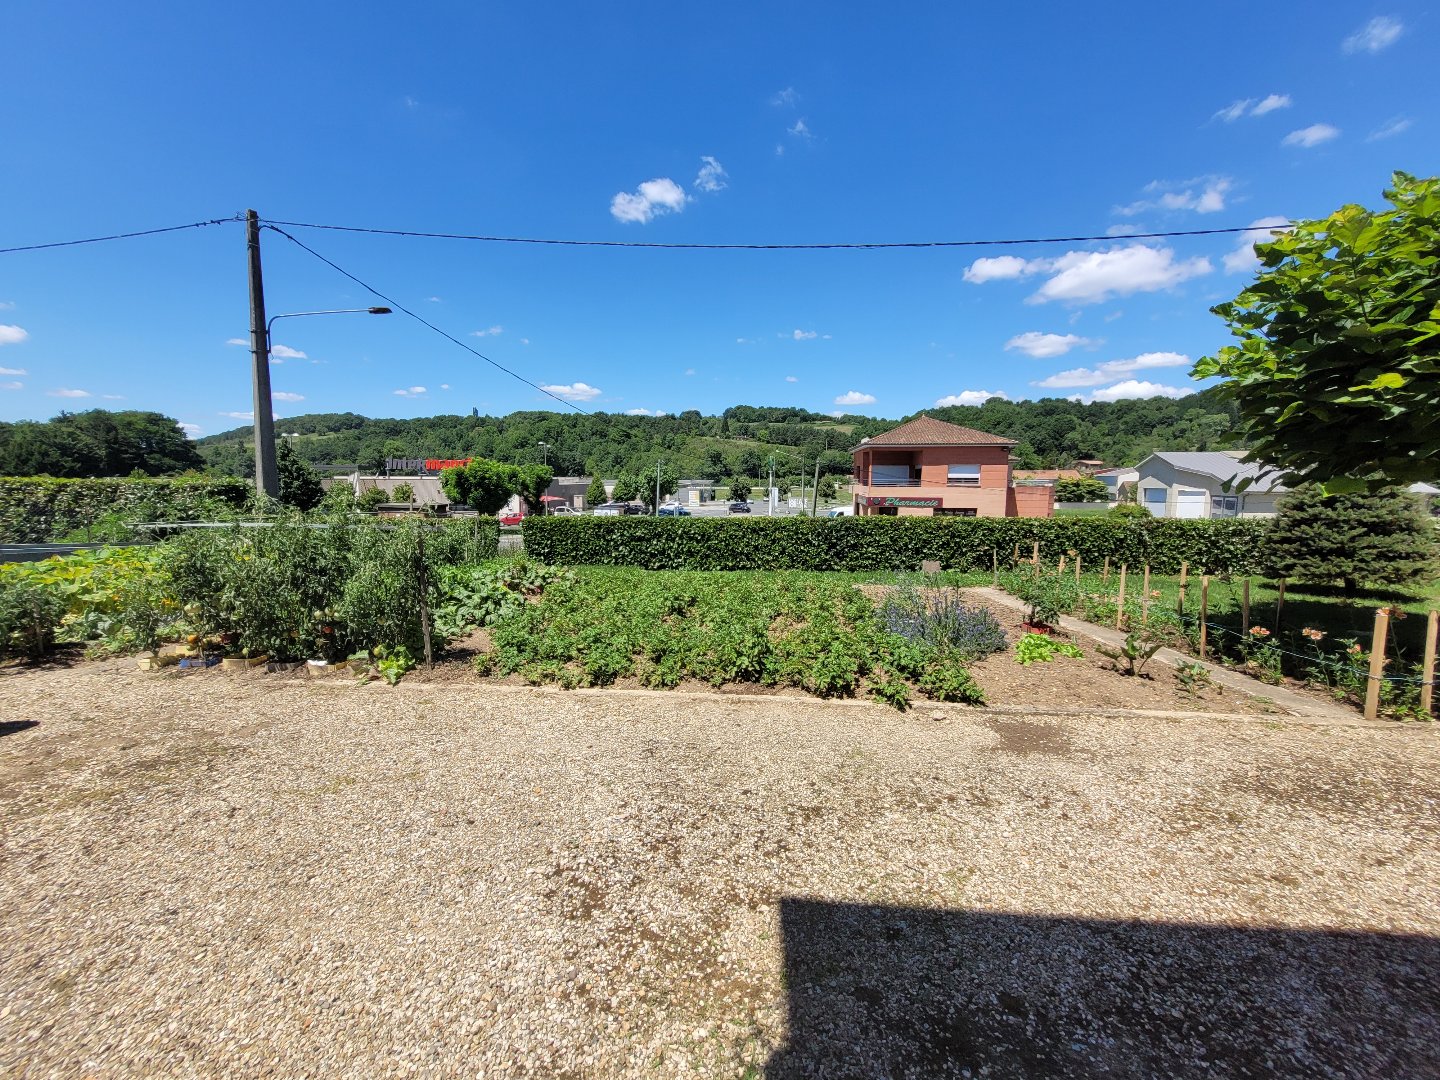 Woonhuis te koop in Frankrijk - Aquitaine - Dordogne - Vergt -  237.000